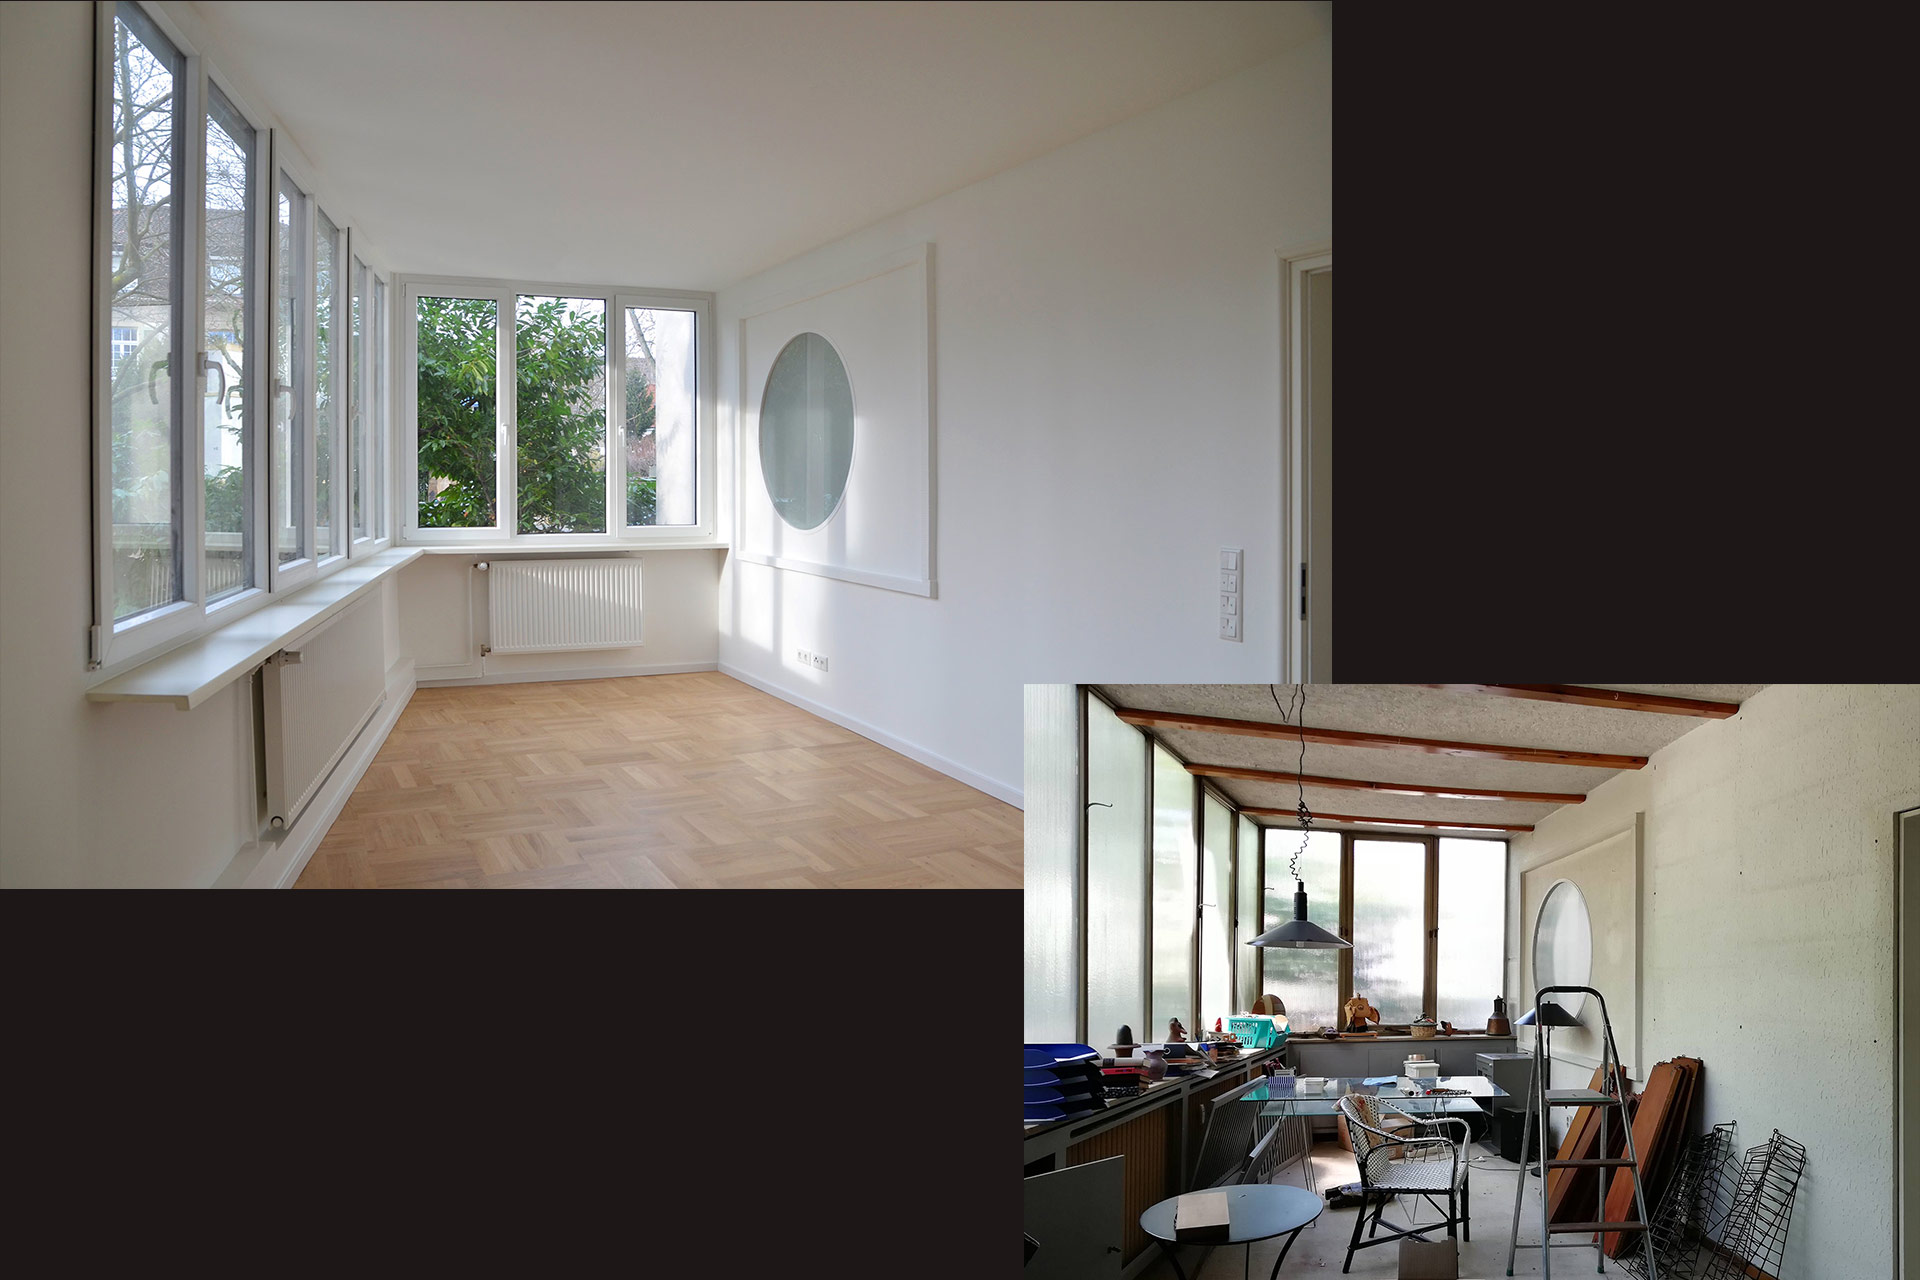 Strobel Architekten | Projekt "LS 18" Gartenzimmer: vorher - nachher